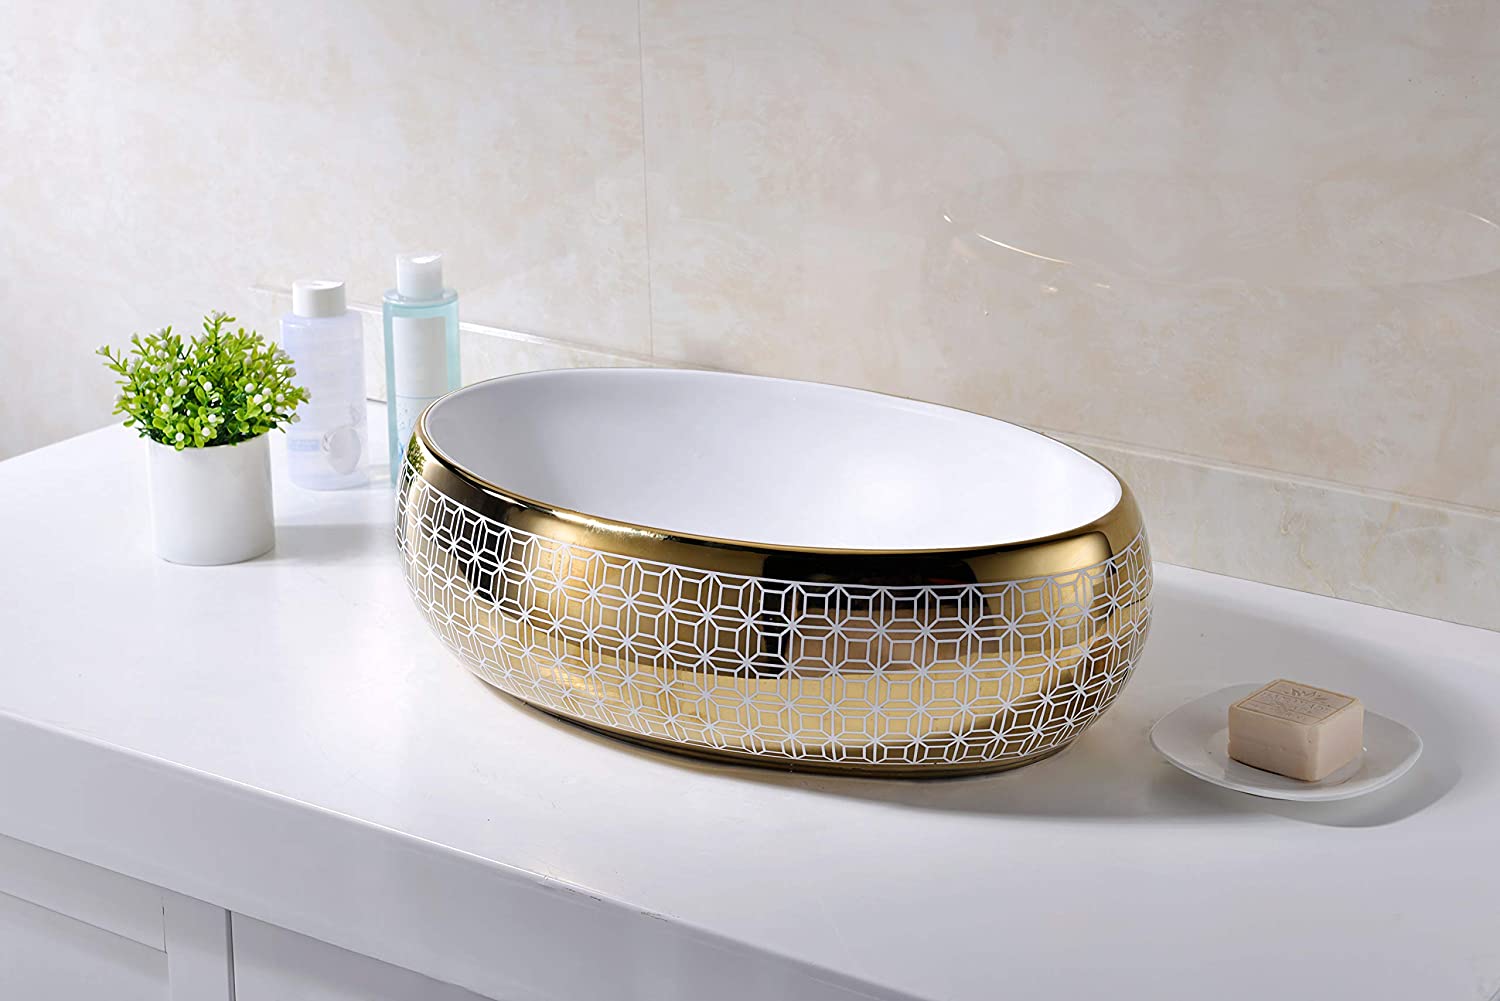 Thoạt nhìn, bồn rửa giống như một chiếc bát vàng với họa tiết đương đại cùng vẻ ngoài bóng bẩy. Được làm từ chất liệu sứ cao cấp, nó sẽ mang đến sự sang trọng tuyệt đối cho phòng tắm của bạn.